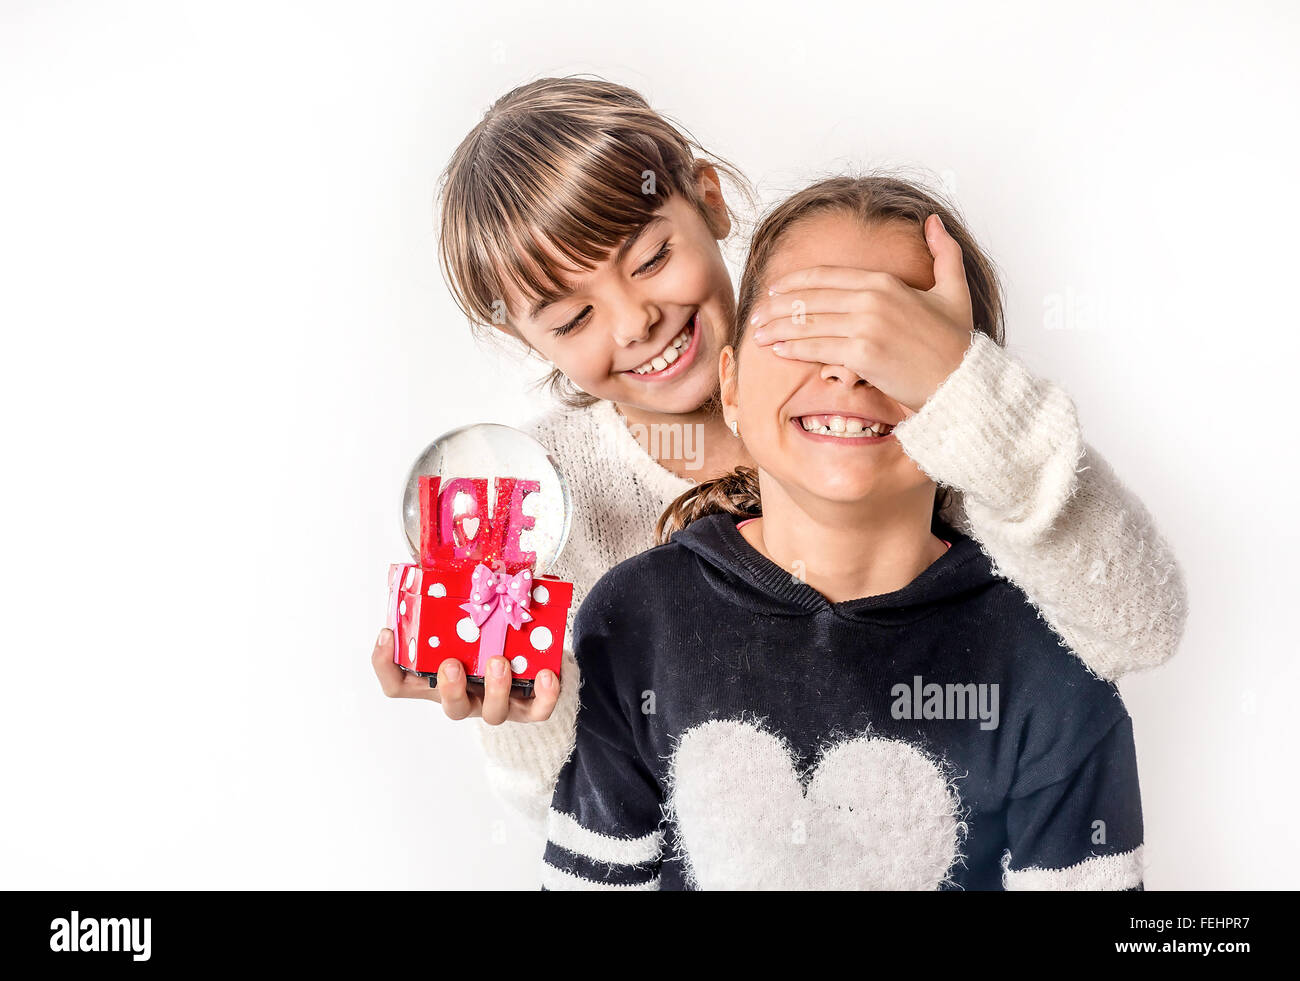 Niña dando amor regalo sorpresa a su amiga con fondo blanco Fotografía de  stock - Alamy